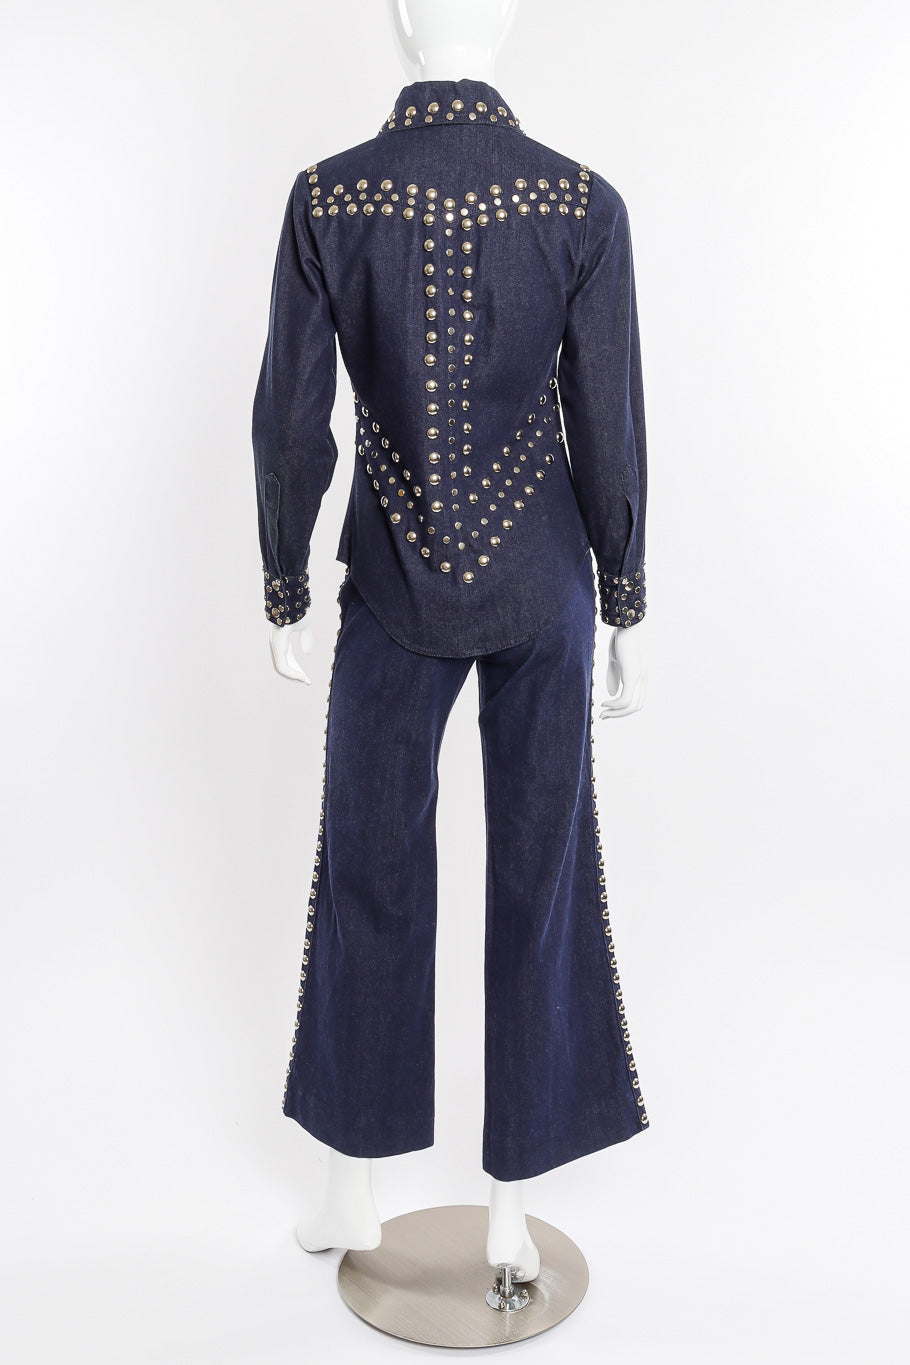 Vintage Allie Flynn Studded Denim Top and Pant Set back view on mannequin @Recessla